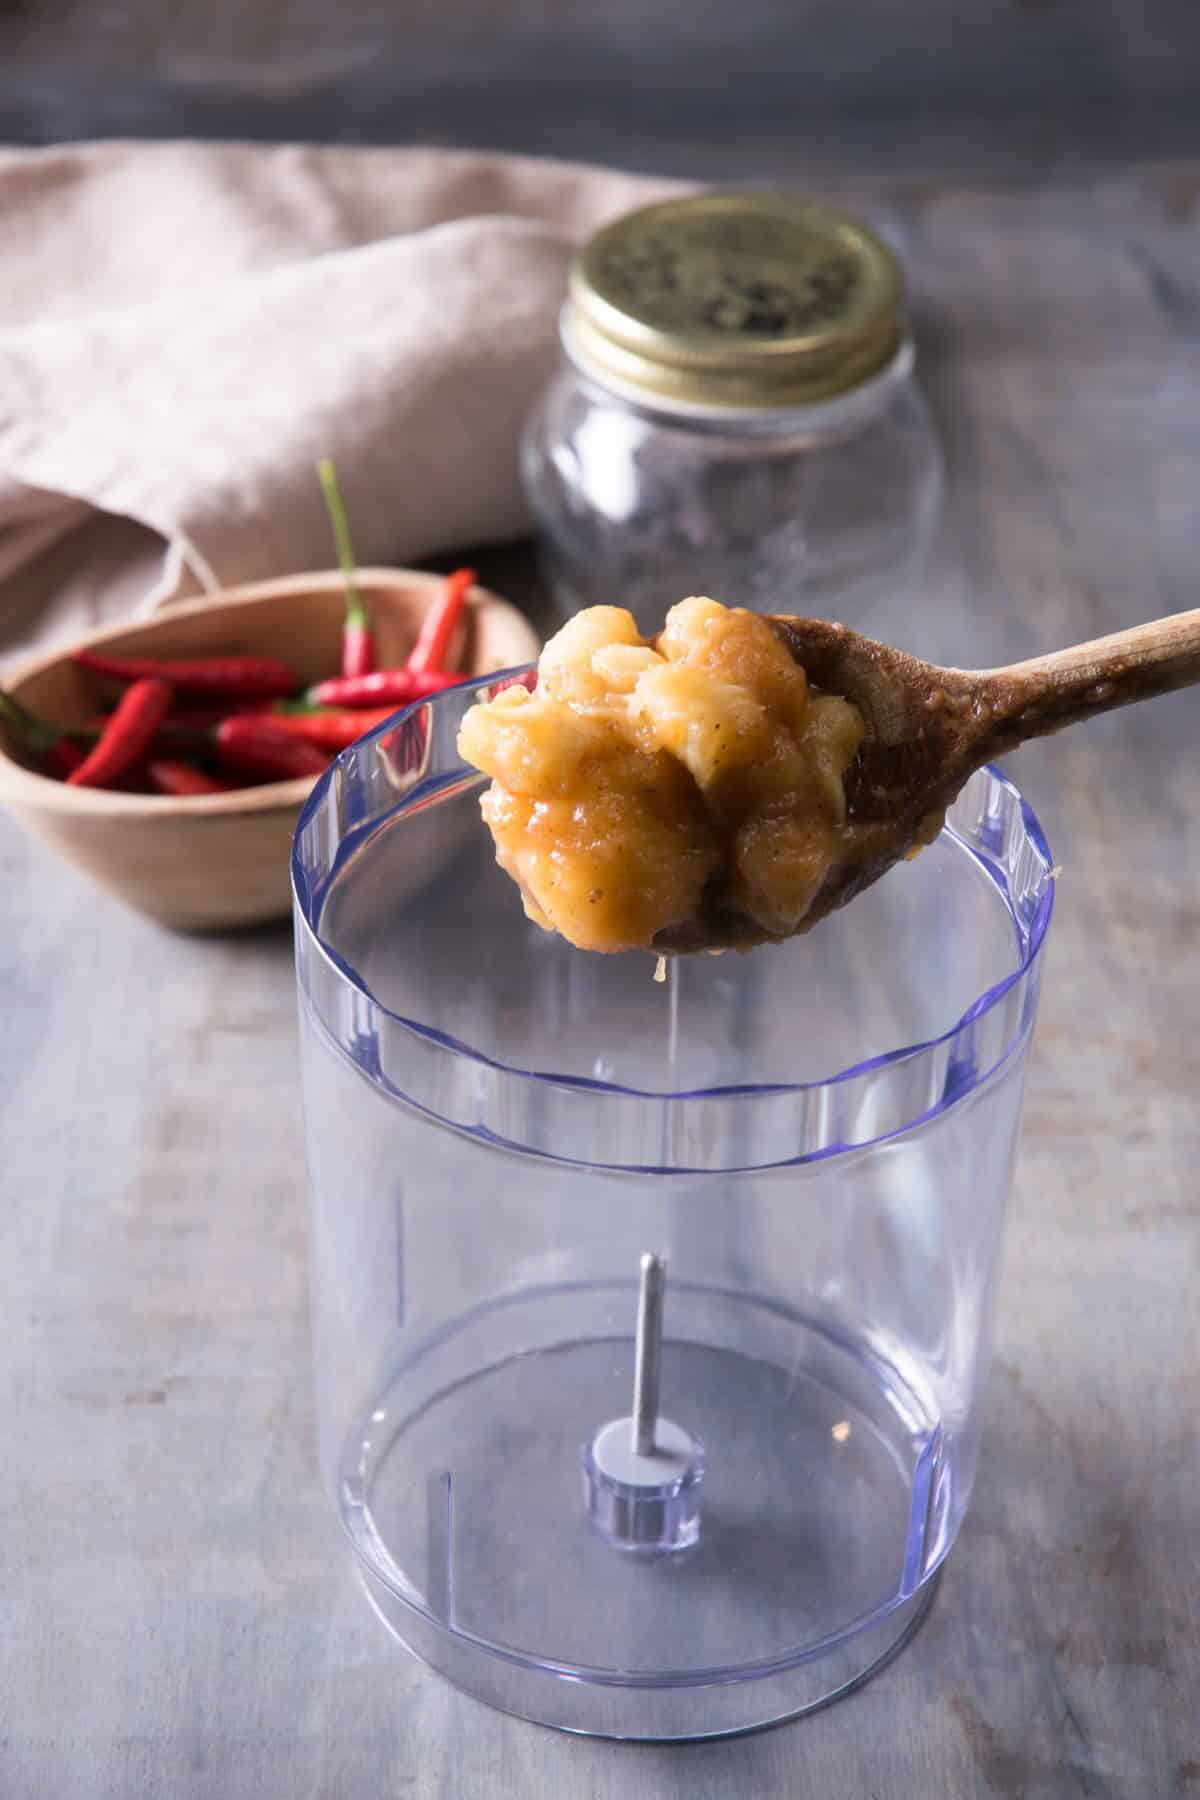 Banana ketchup mixture on a wooden spoon and a blender jar.